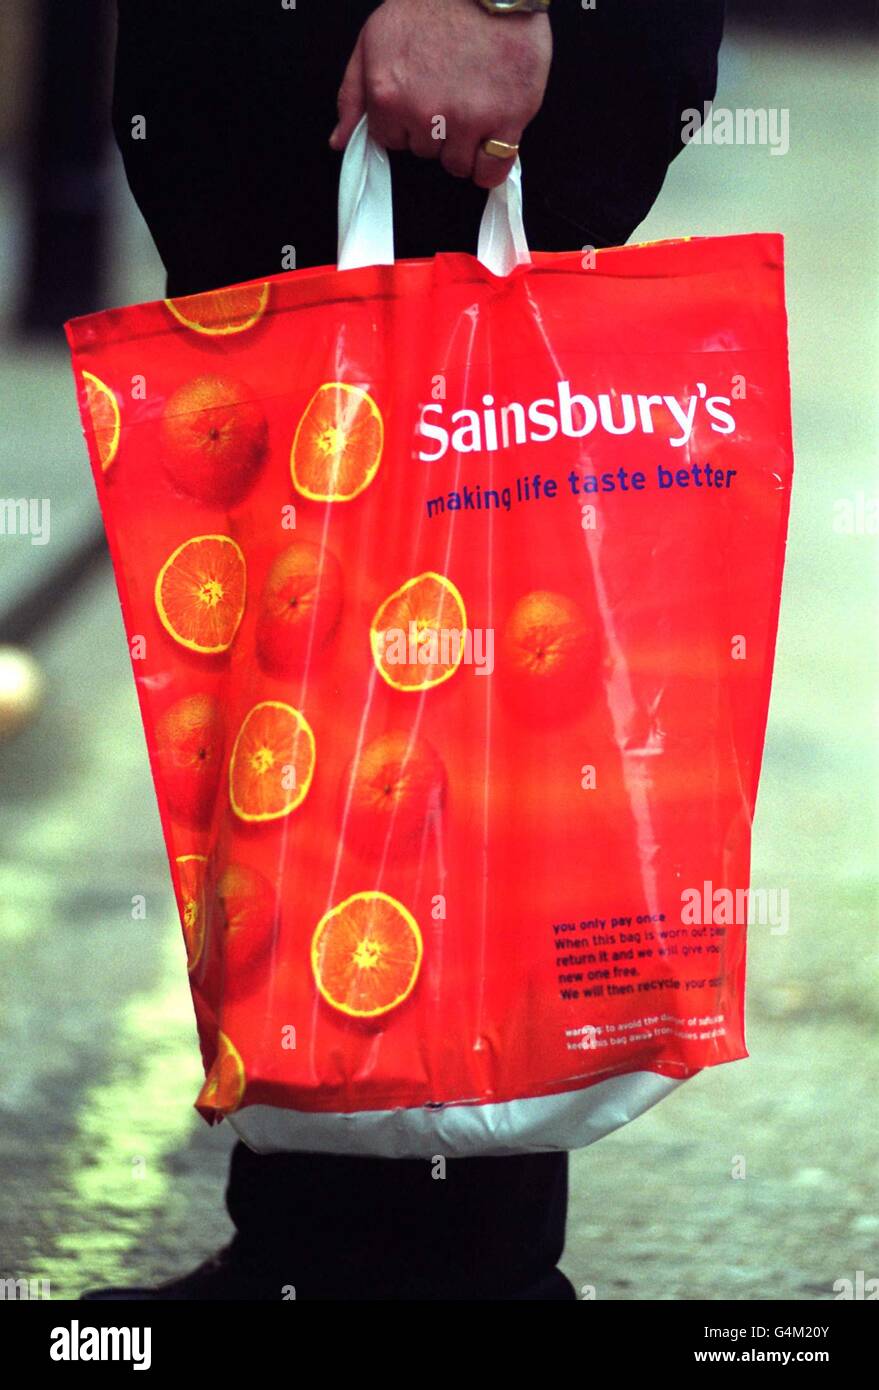 Un sac de transport en plastique Sainsbury dans les nouvelles couleurs du géant du supermarché. Dans le cadre de ses efforts pour revitaliser ses profits, Sainsbury a déversé les couleurs orange et marron ternes qu'elle utilise depuis les années 1970, les a remplacées par un sac plus brillant avec son nouveau logo. * 'Sainsbury's - rendre le goût de la vie meilleur'. 23/11/99: Les bénéfices de Sainsbury ont dégré de 29.5% car le groupe a investi massivement pour tenir ses propres dans les guerres des magasins. Sainsbury a déclaré que le coût du développement de campagnes pour aider à augmenter les ventes avait entraîné une baisse des bénéfices. Les coûts ont fait baisser ses bénéfices avant impôts à 297 millions dans les 28 semaines d'octobre Banque D'Images